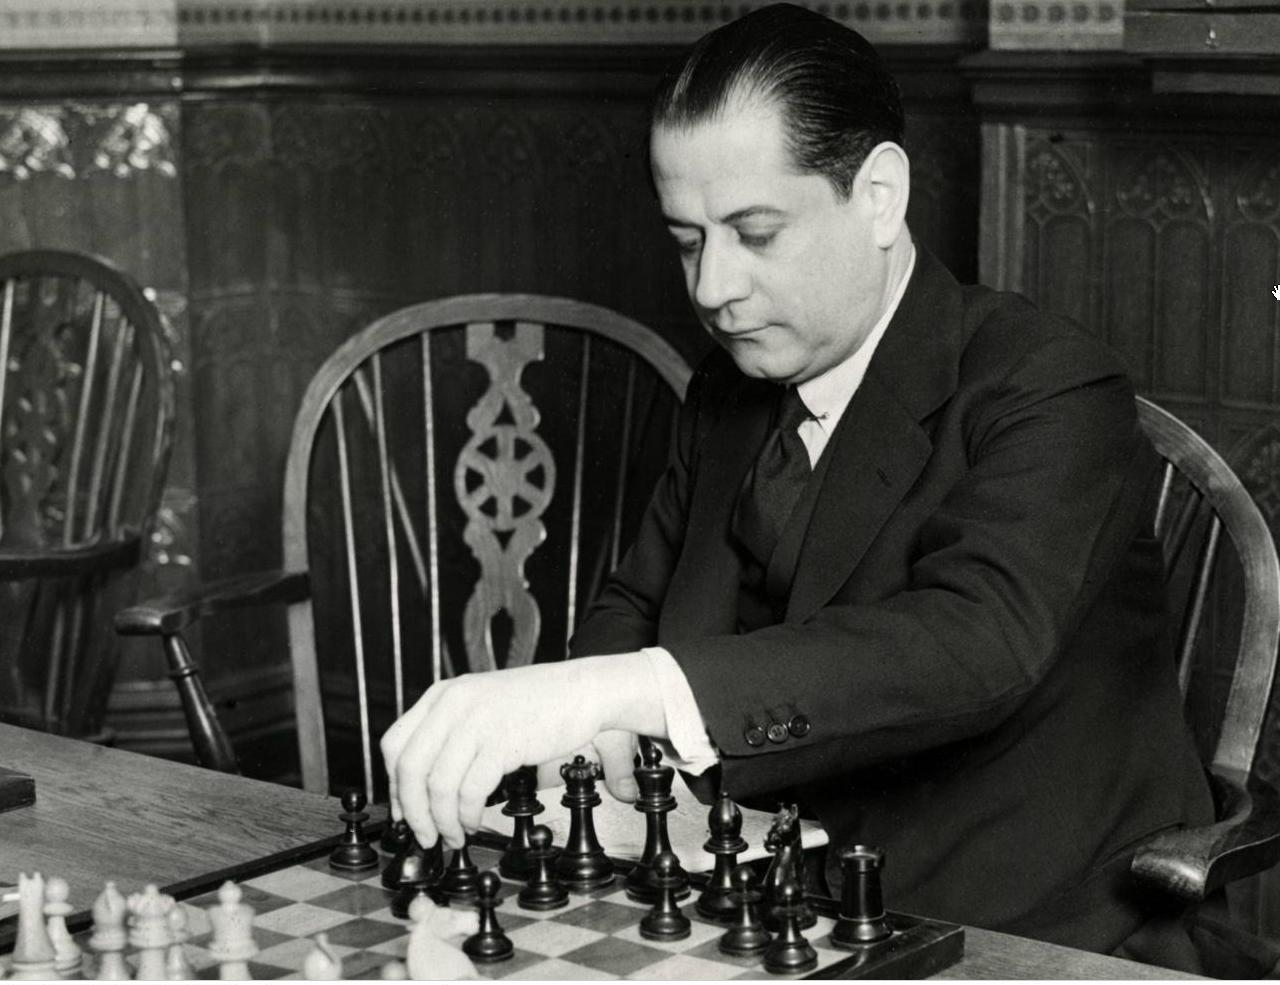 Шахматы 1 игрок. Хосе Рауль Капабланка шахматист. Кубинский шахматист Капабланка.